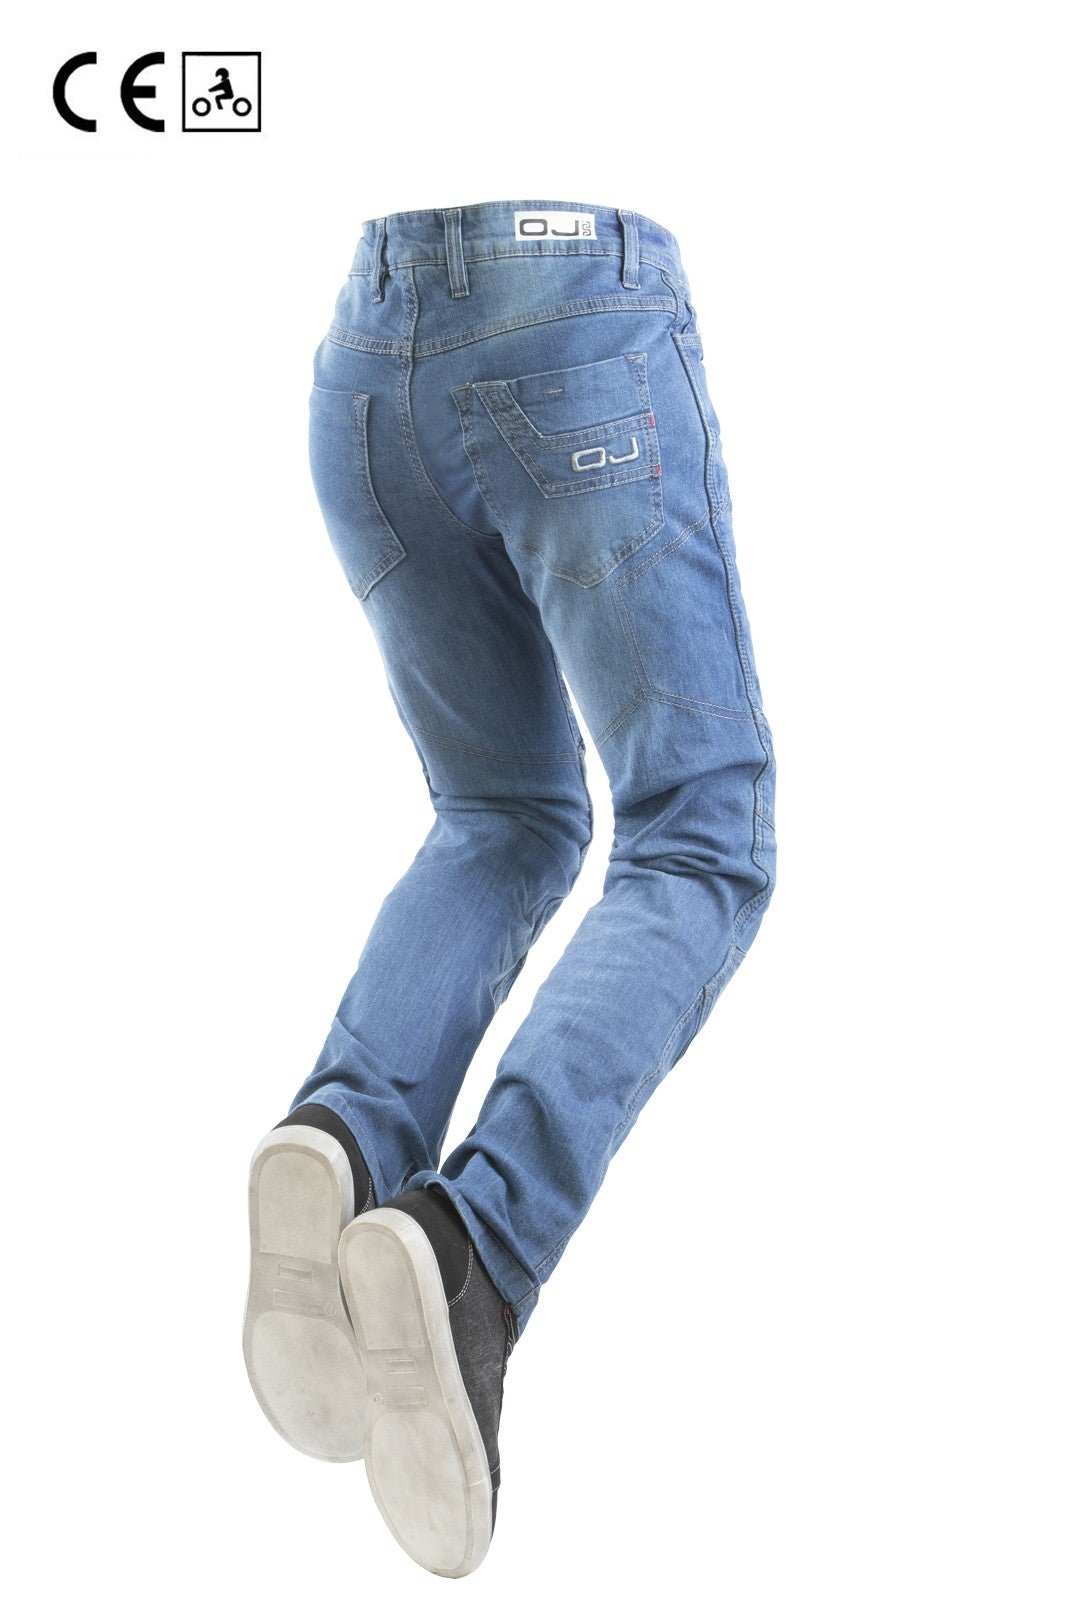 Jeans moto OJ DEFENDER LADY donna, elasticizzato, aramide, protezioni rimovibili - OnTheRoad.shop - OJ